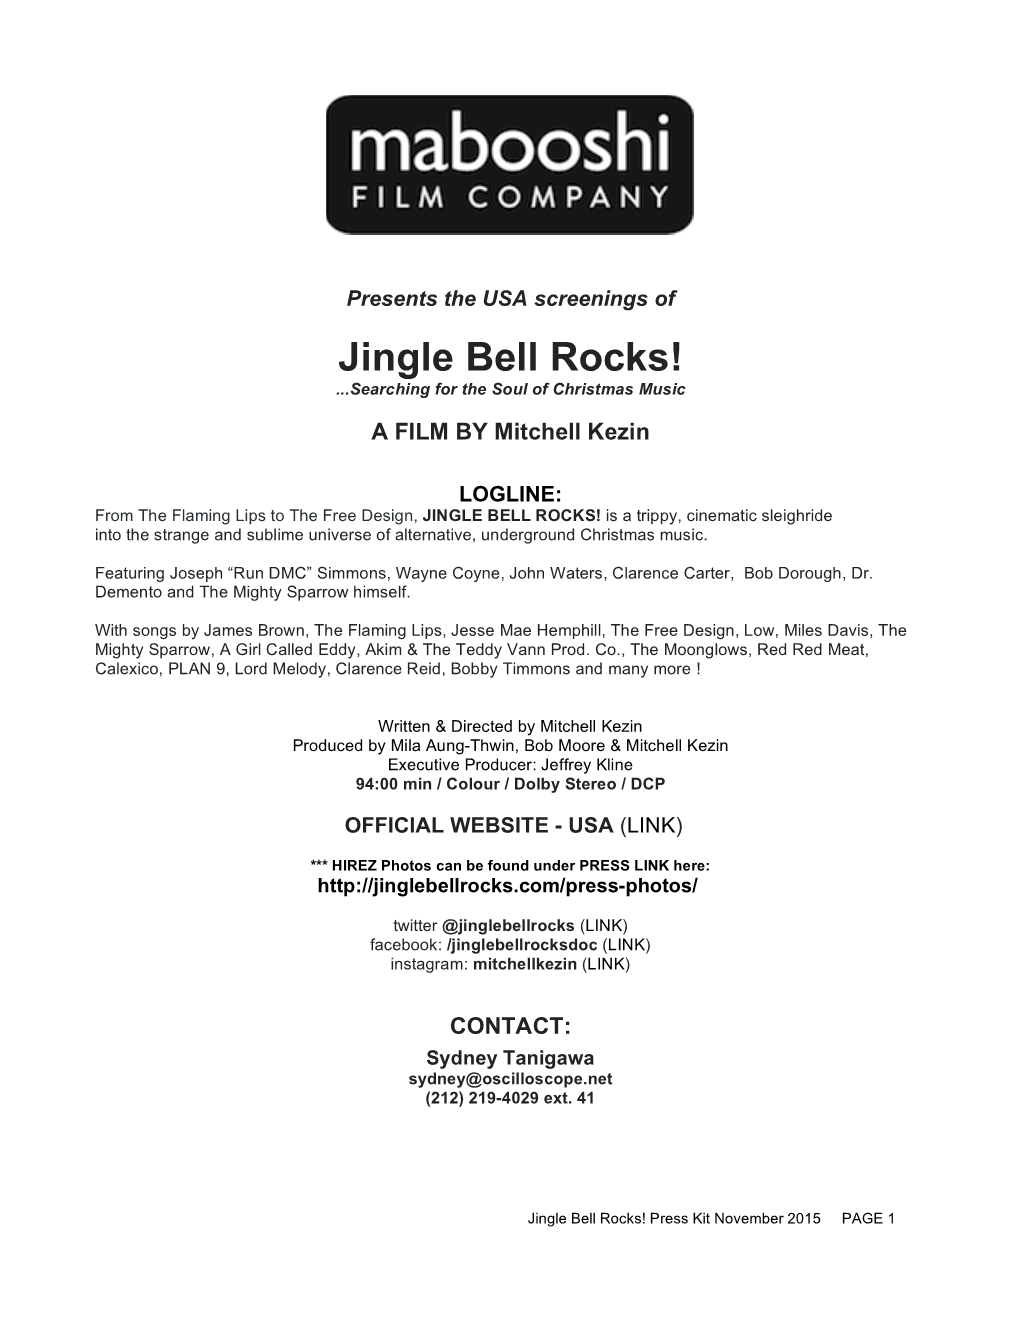 Jingle Bell Rocks! Soundtrack